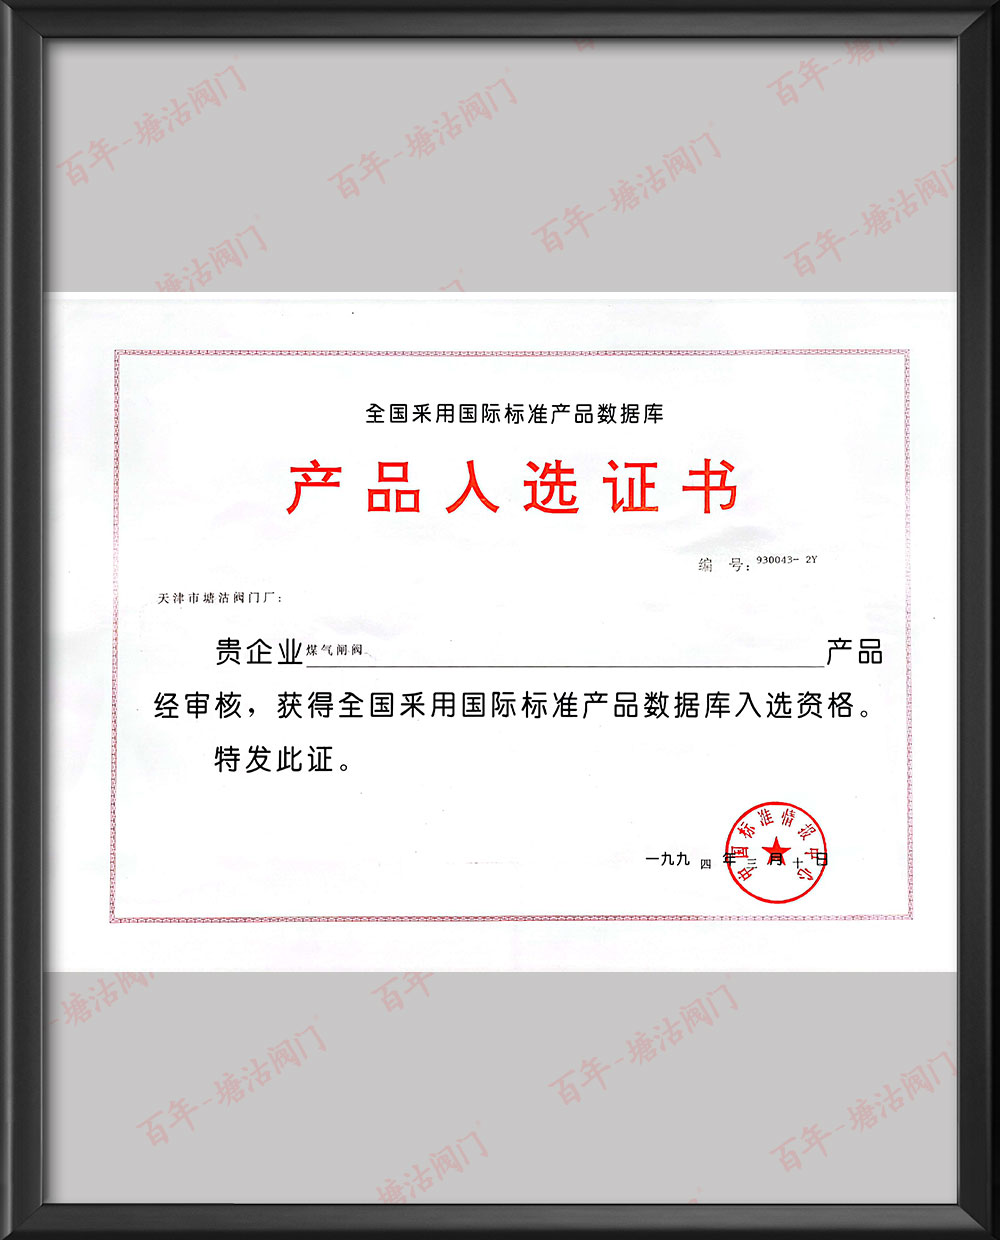 1994年全国采用国际标准产品数据库产品入选证书-煤气闸阀